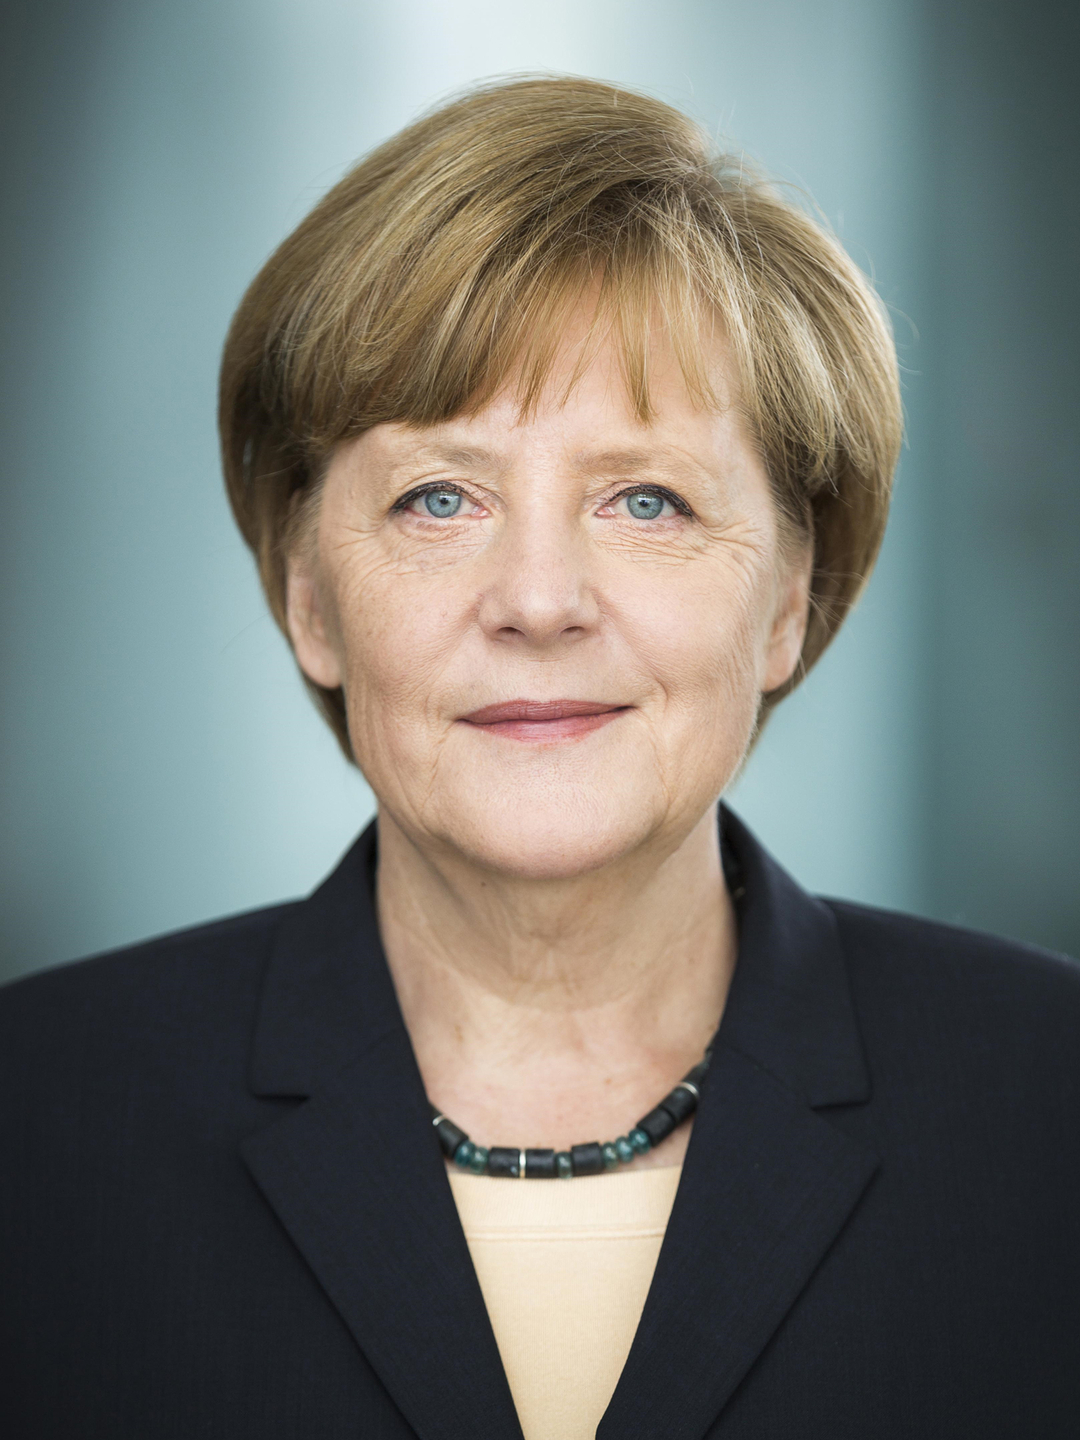 Angela Merkel in real life